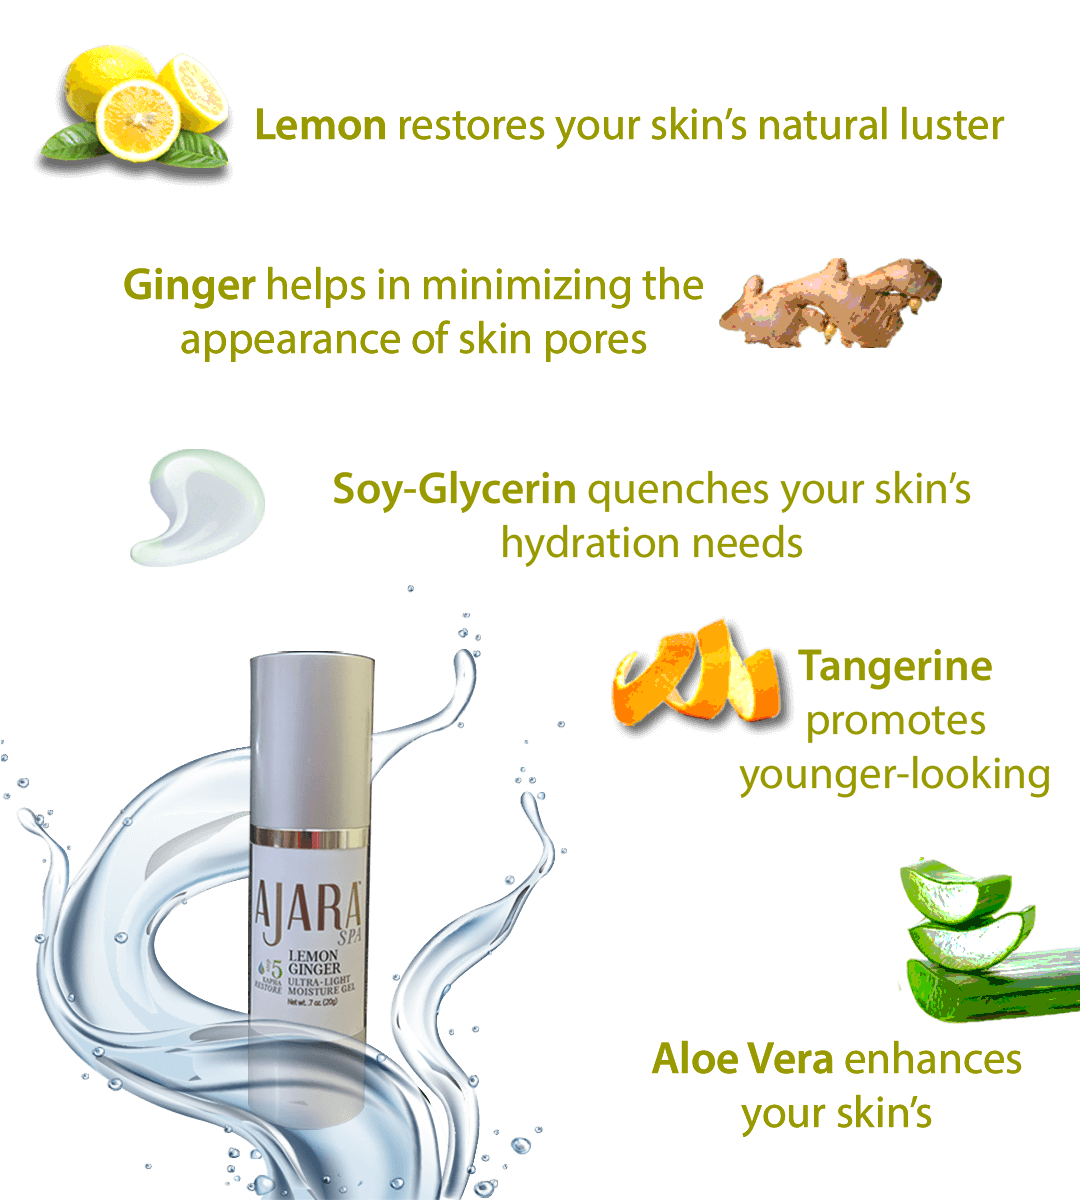 Ajara's Lemon Ginger Gel Based Moisturizer- BENEFITS , Lemon, Ginger, Aloe Vera, Tangerine